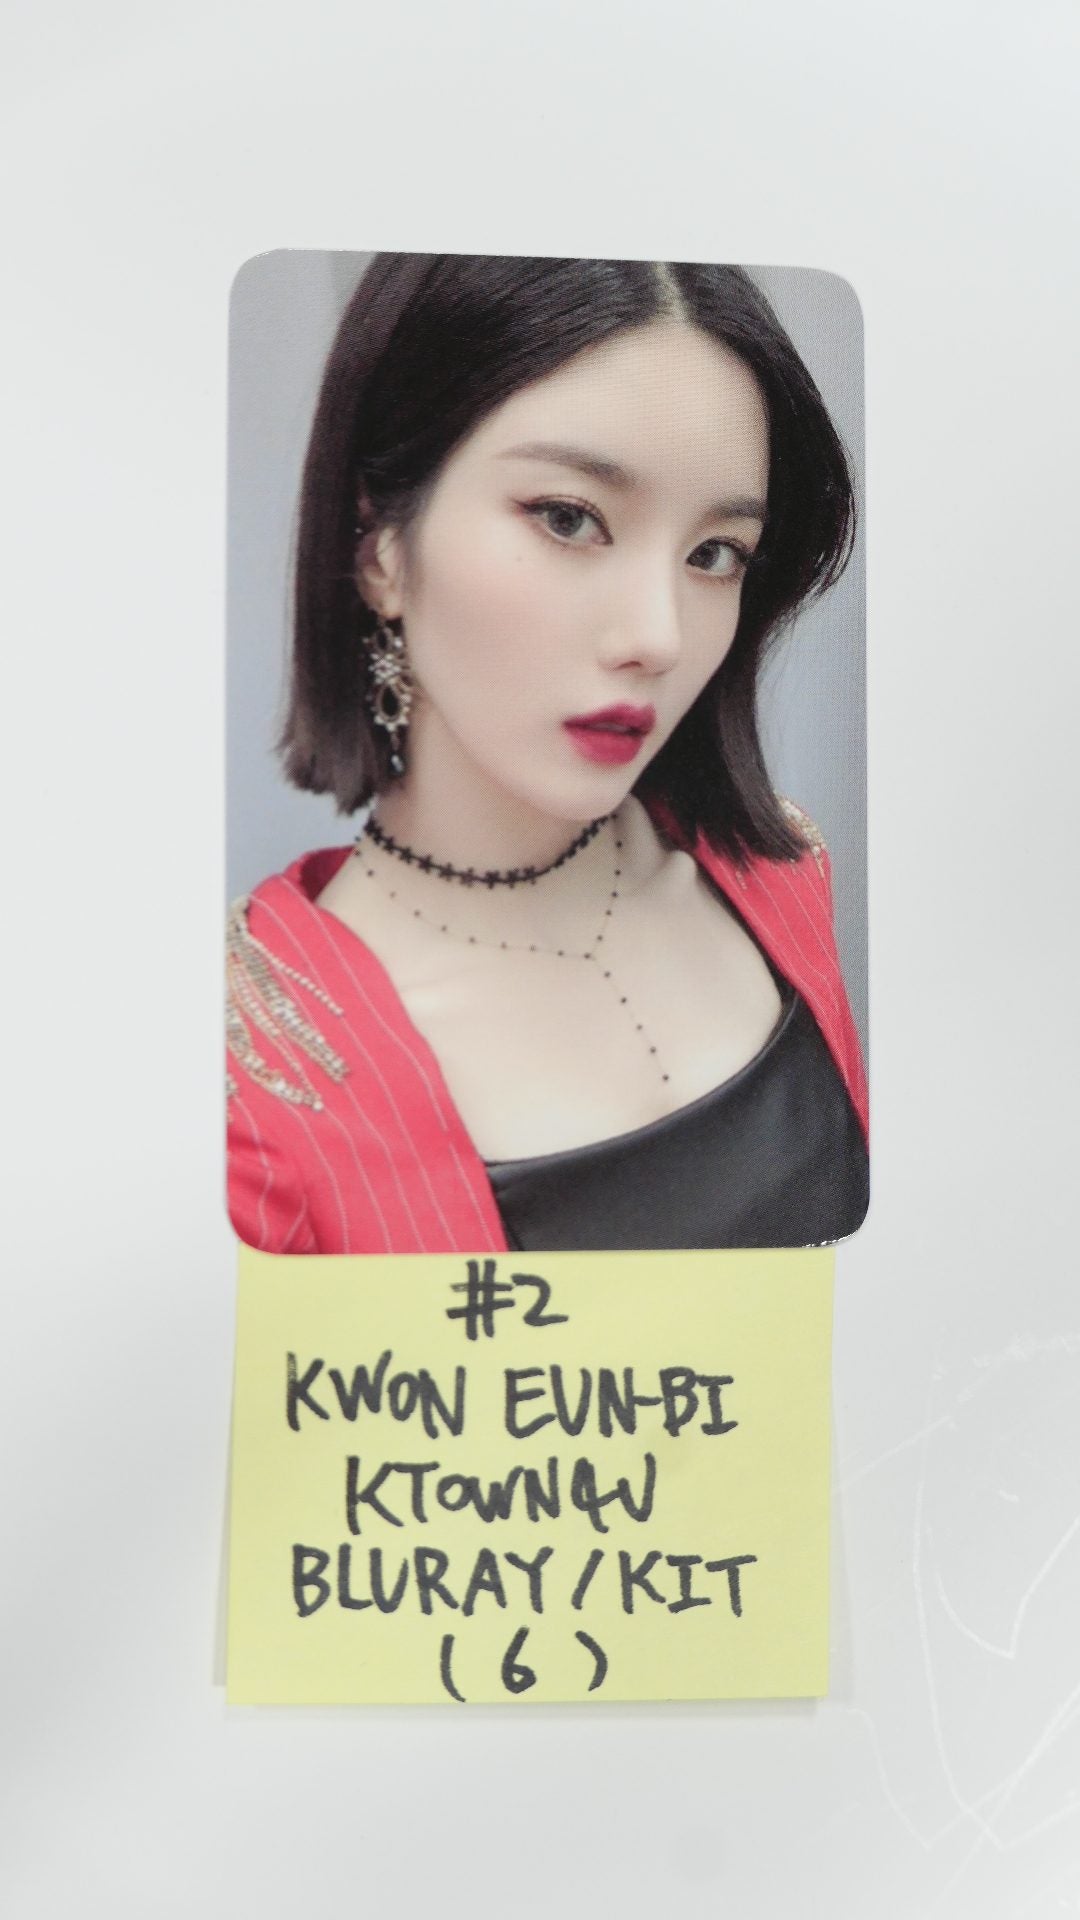 아이즈원 아이즈원 - Oneiric Theater Ktown4u 예약판매 포토카드